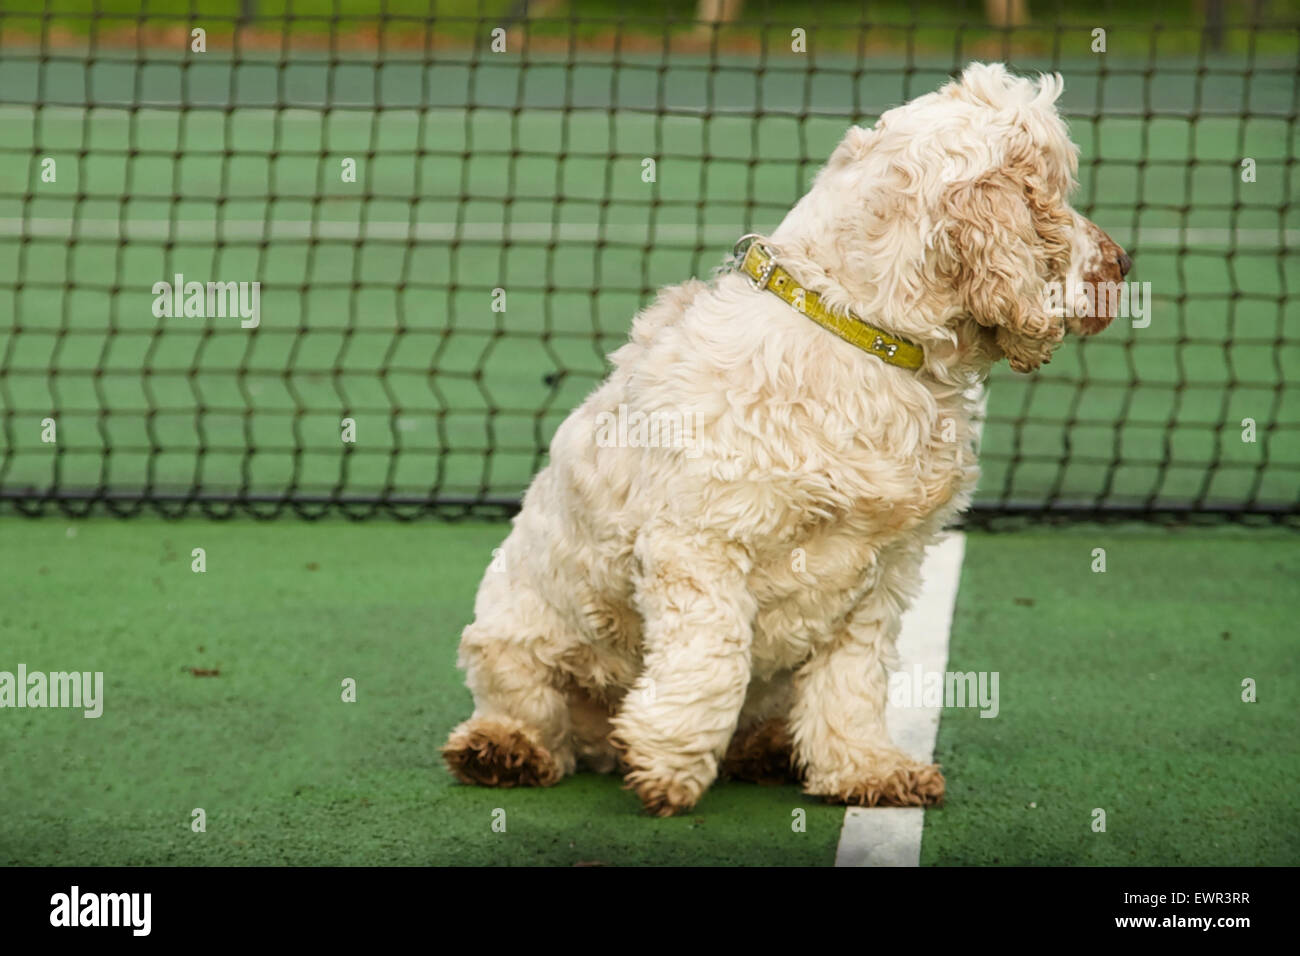 Hund auf Tennis Center Service-Line von Netz auf der Suche aus zu seiner linken.  Cocker Spaniel orange Roan mit Pfote auf Mittellinie. Stockfoto